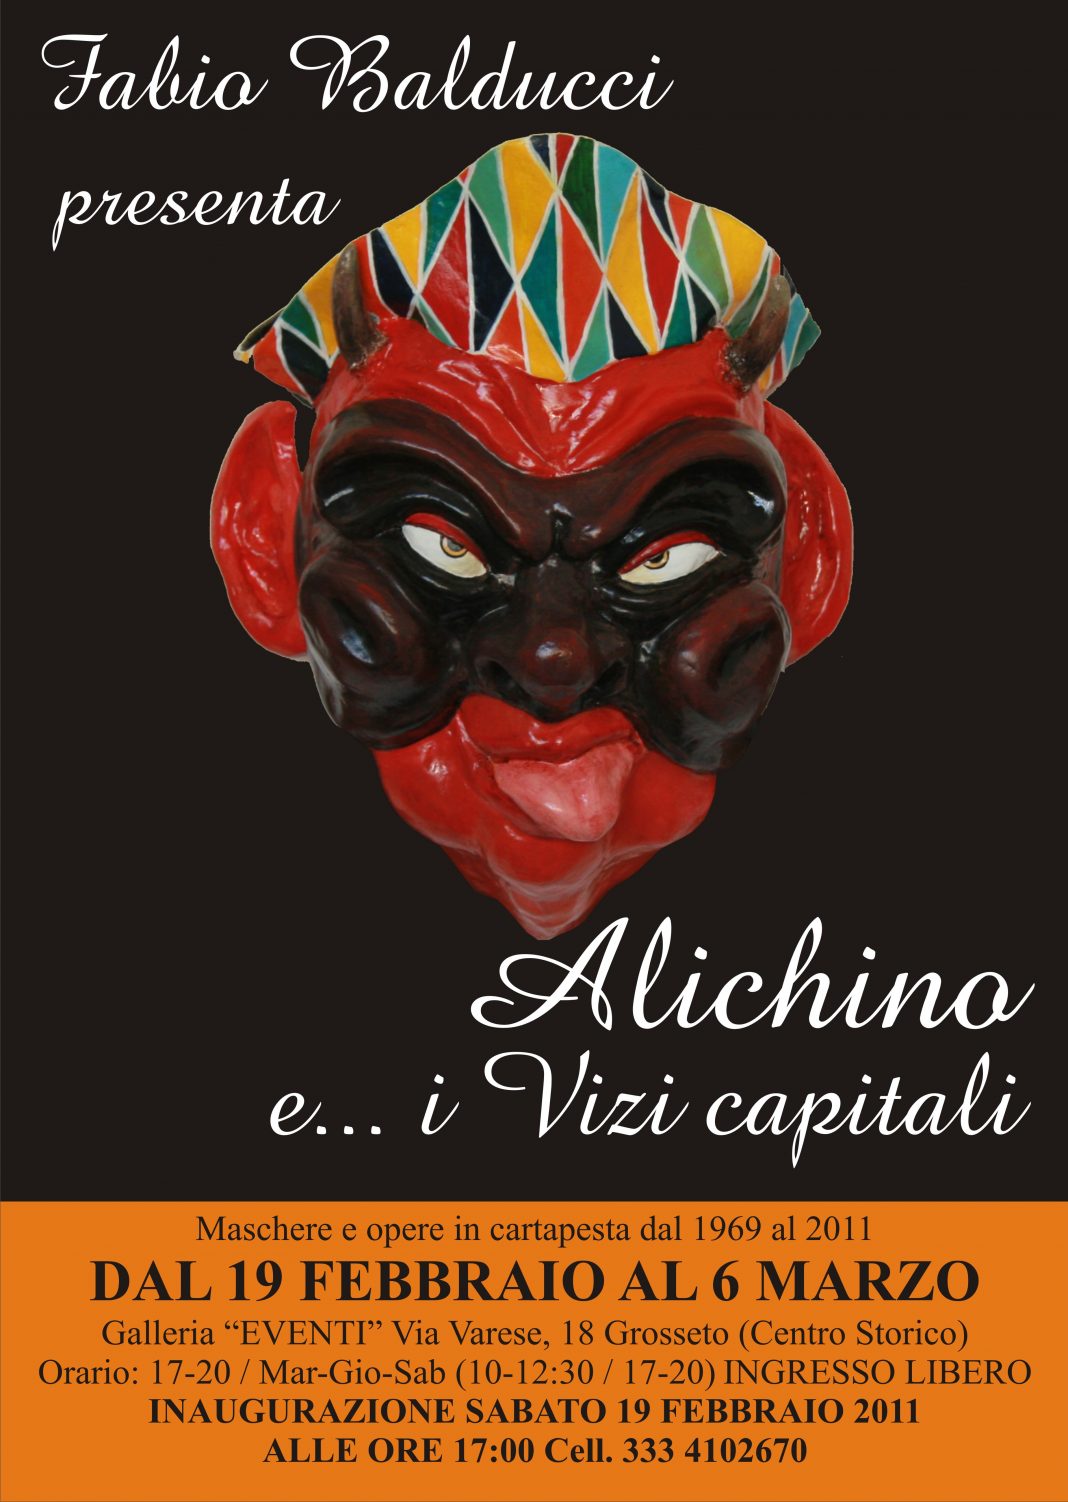 Fabio Balducci – Alichino e i vizi capitalihttps://www.exibart.com/repository/media/eventi/2011/02/fabio-balducci-8211-alichino-e-i-vizi-capitali-1068x1502.jpg